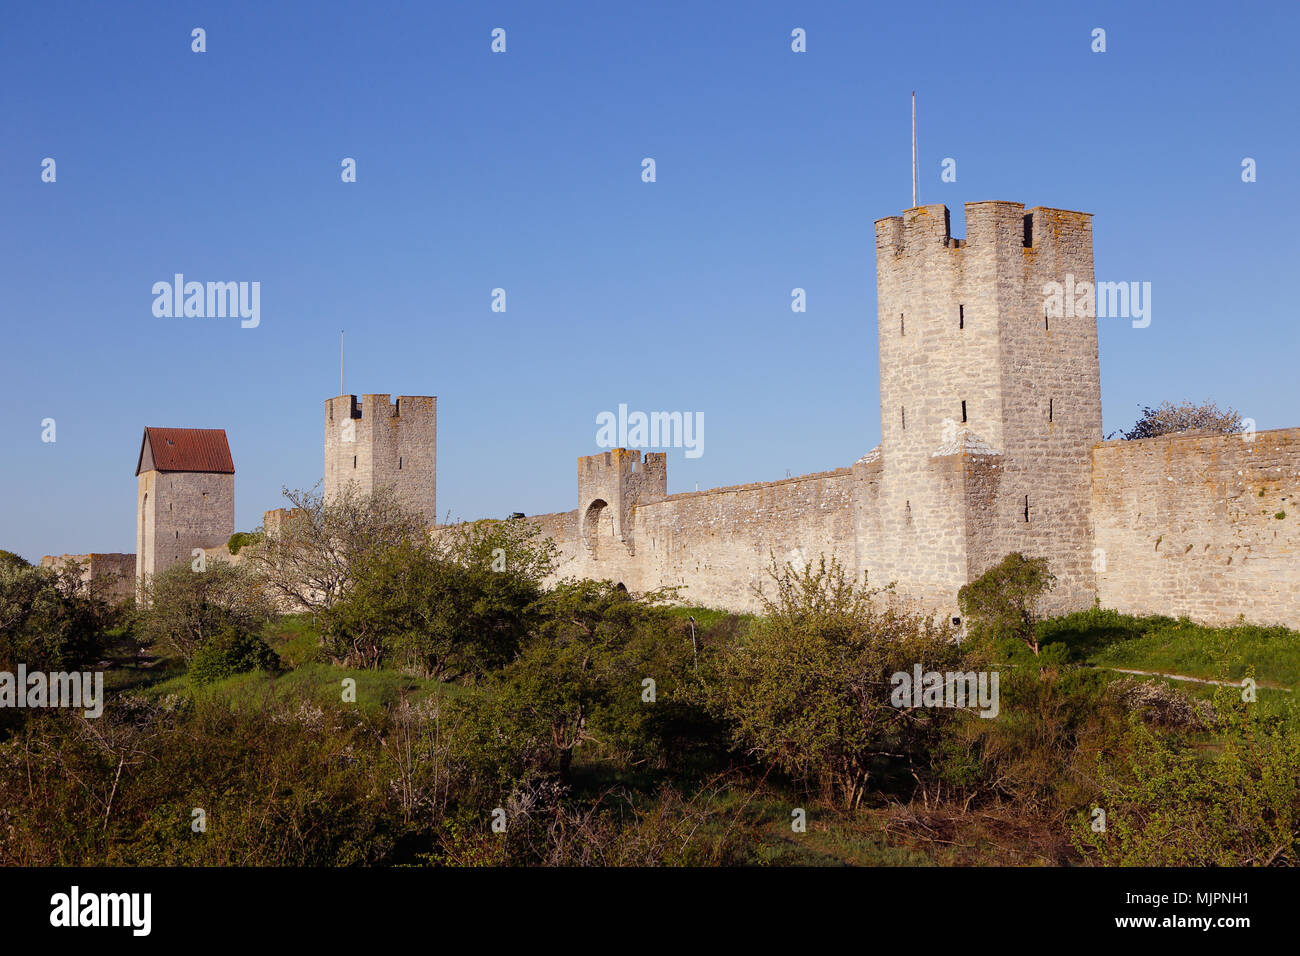 Une partie de mur de la ville de Visby surronding la principale ville de tne Swedhish province de Gotland. Banque D'Images